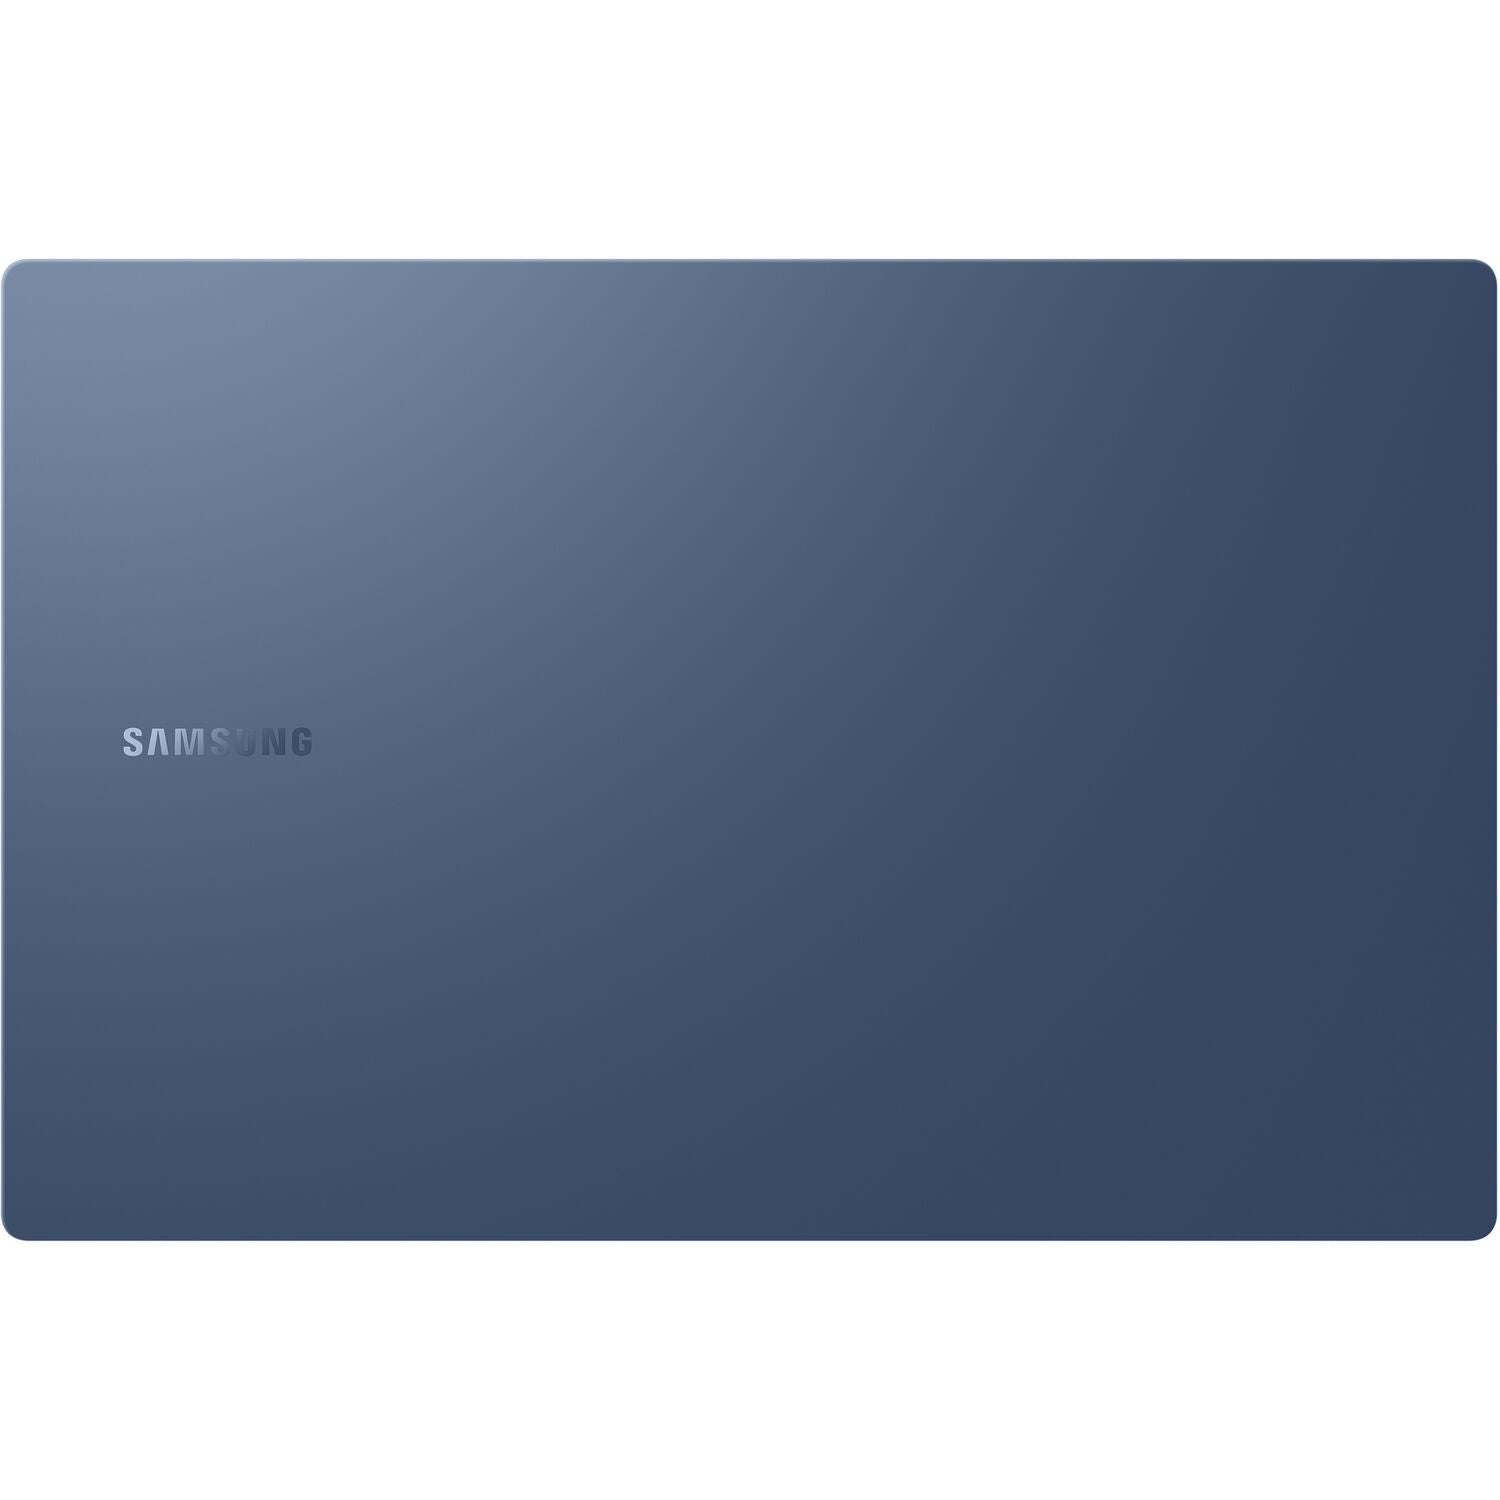 Samsung NP930XDB-KD1US-RB Galaxy Book Pro 13.3" FHD i7-1165G7 8GB 512GB W10H Blue - Certified Refurbished